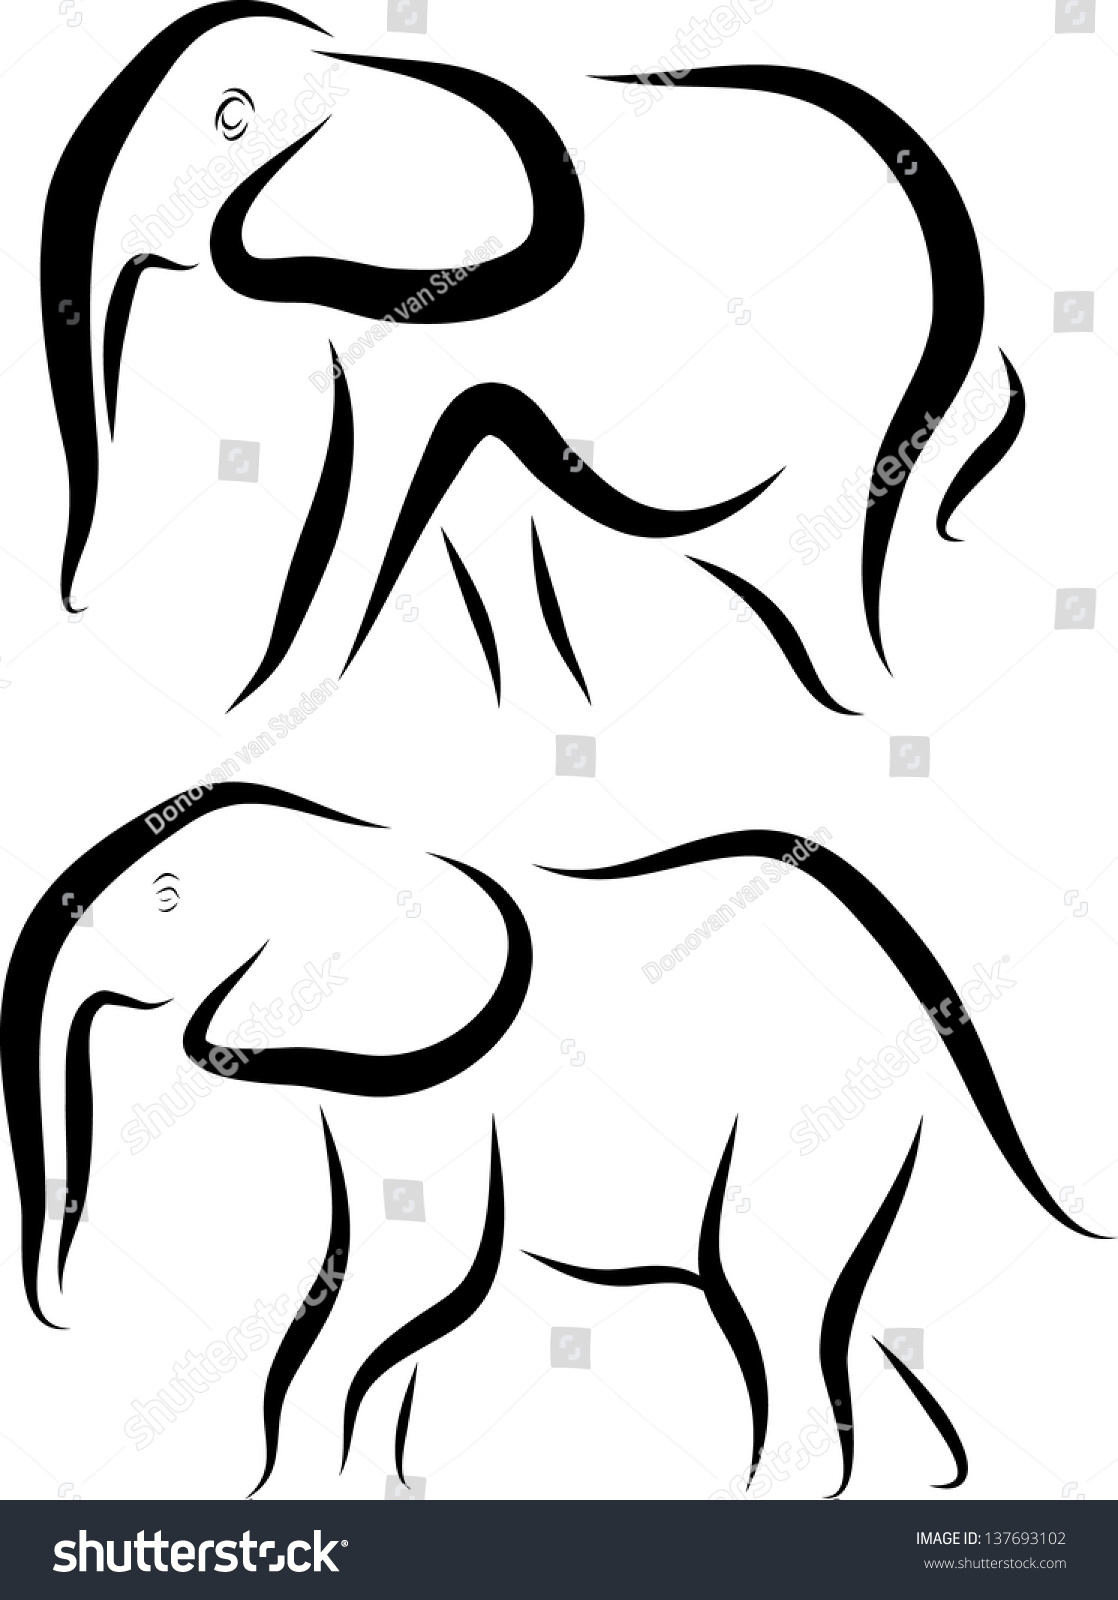 Elephant Line Art Pair Stock Vector Illustration 137693102 : Shutterstock